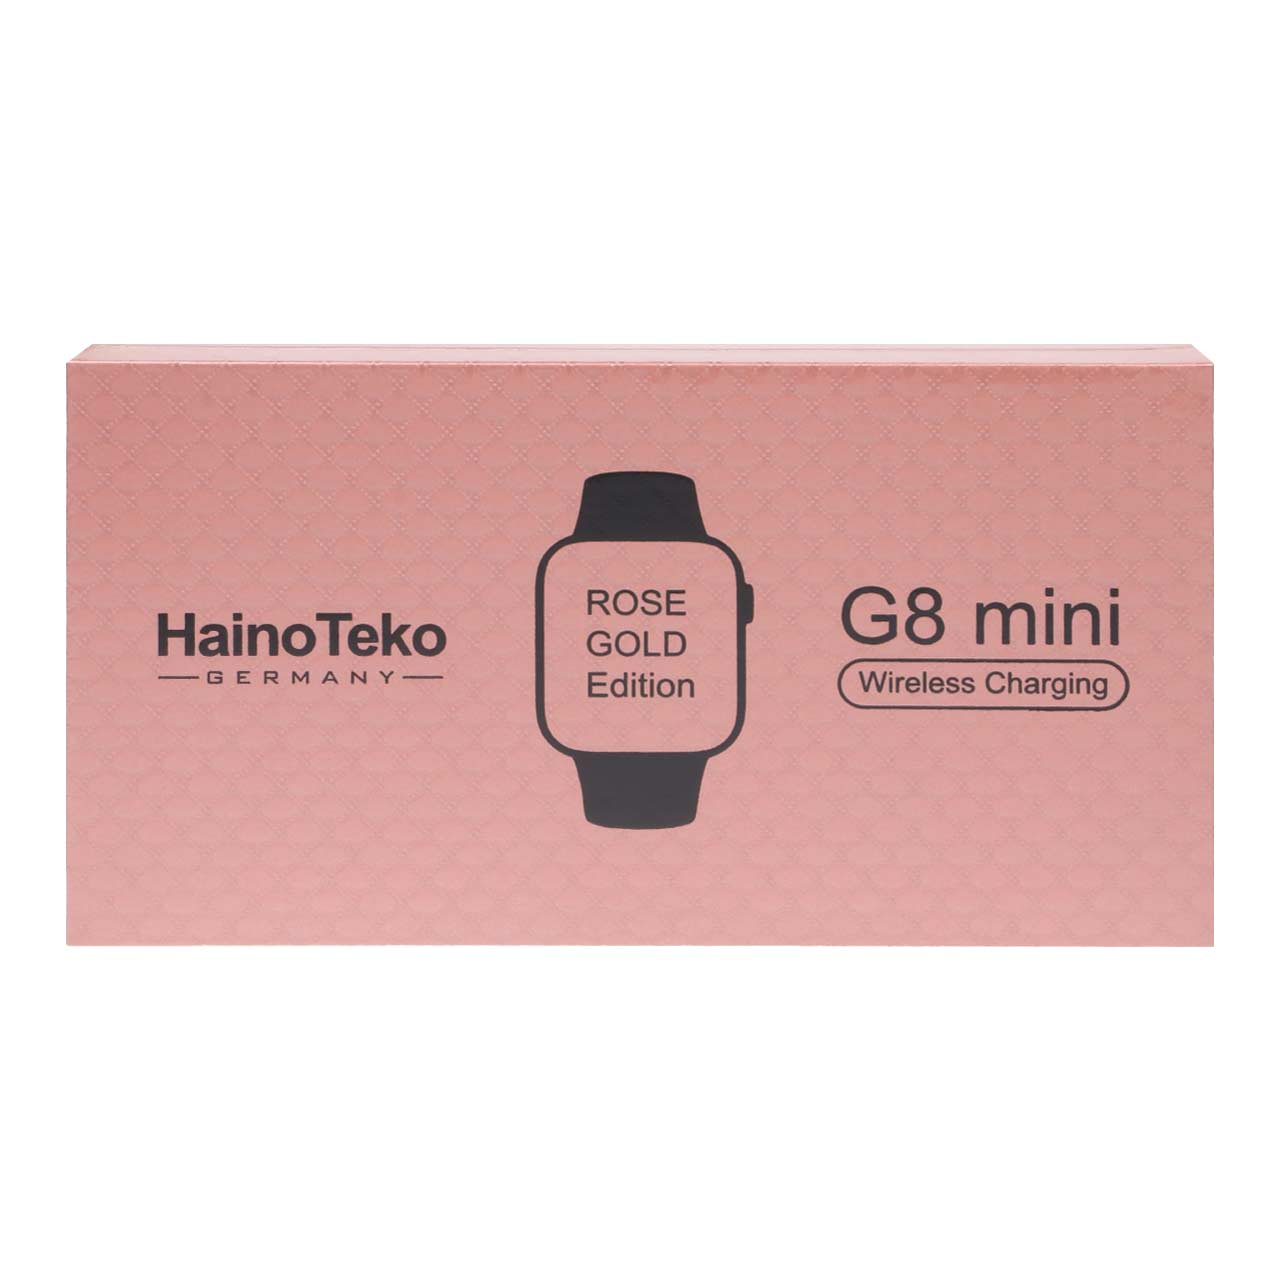 ساعت هوشمند Haino Teko مدل G8 Mini - رزگلد - DST (گارانتی شش ماهه)